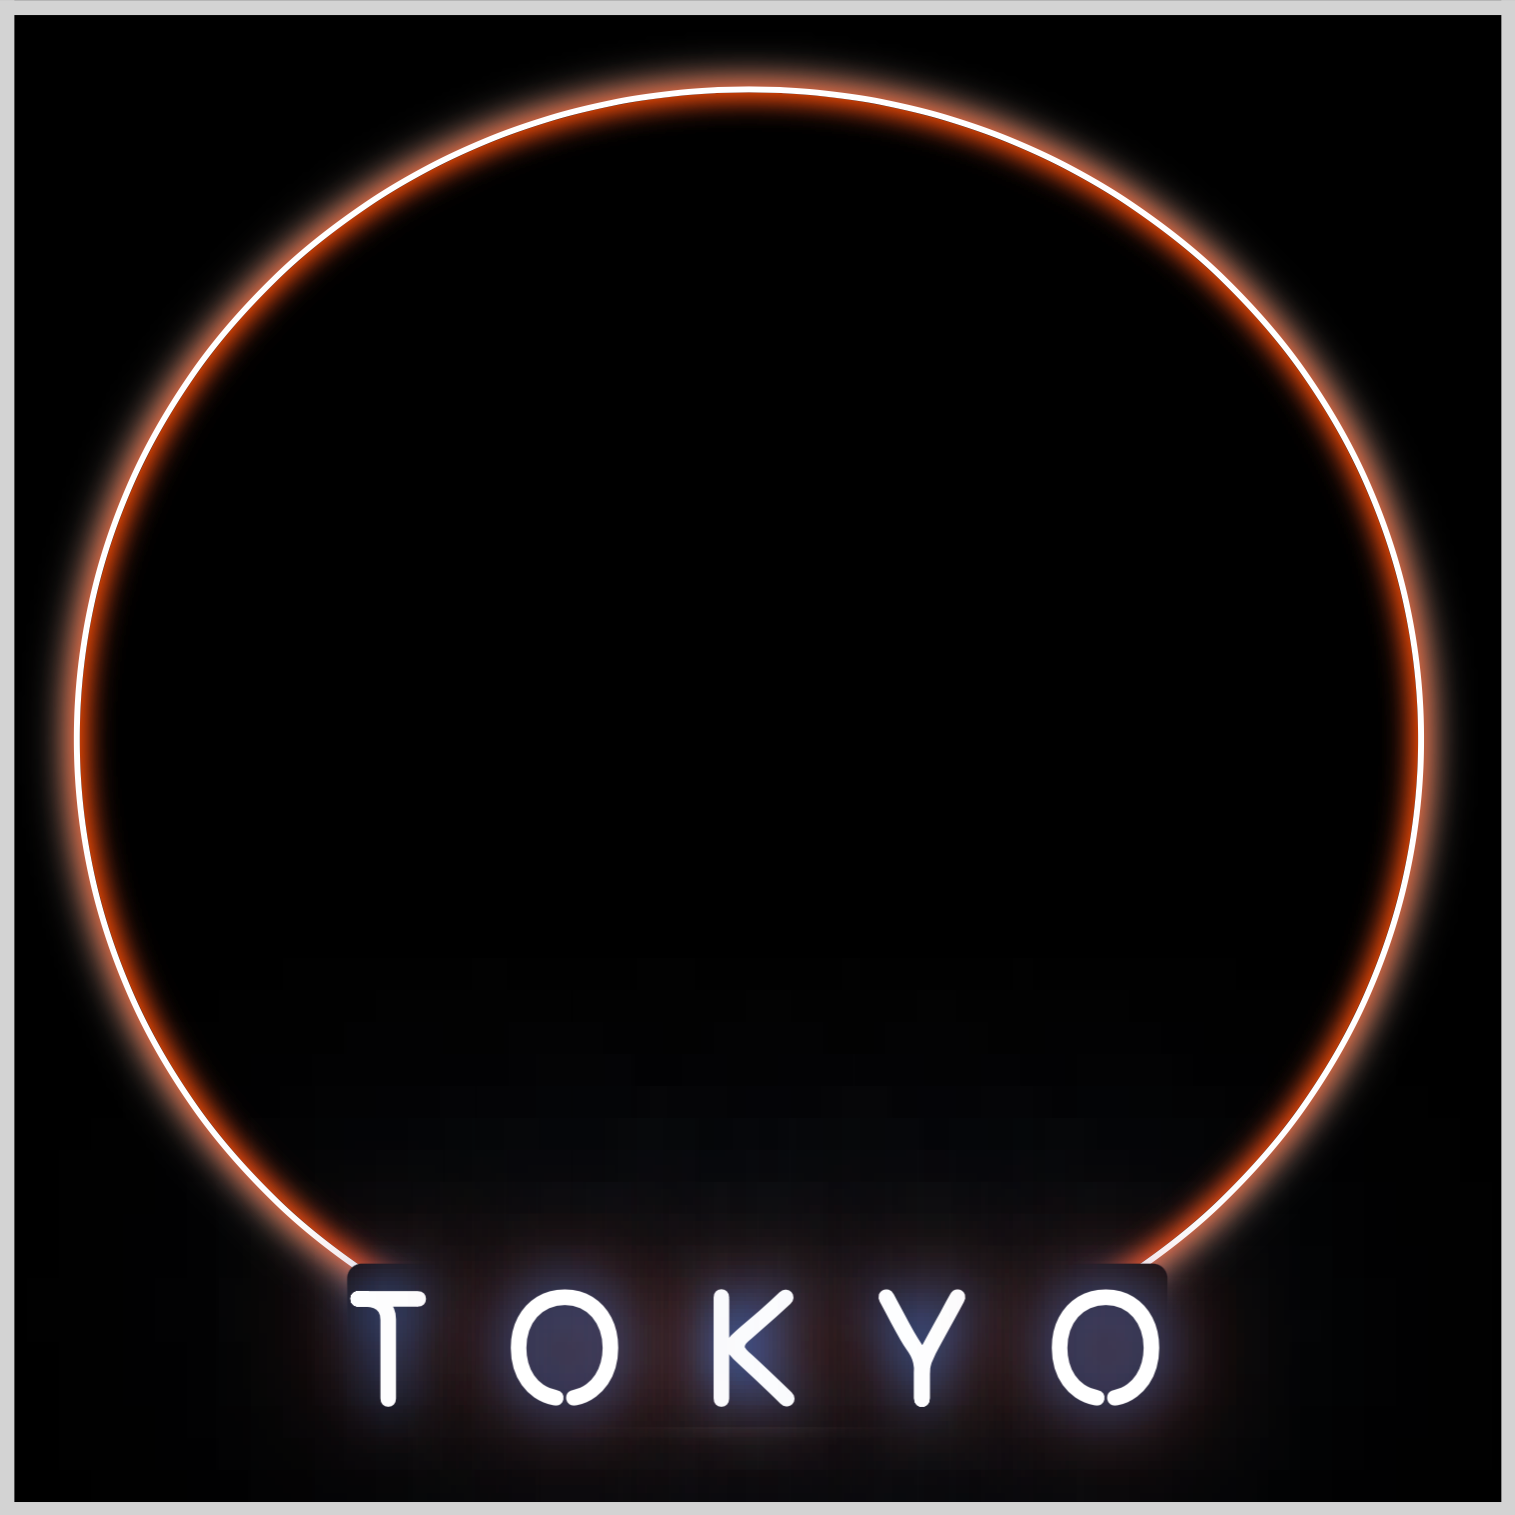 Circle Shape and Tokyo Text